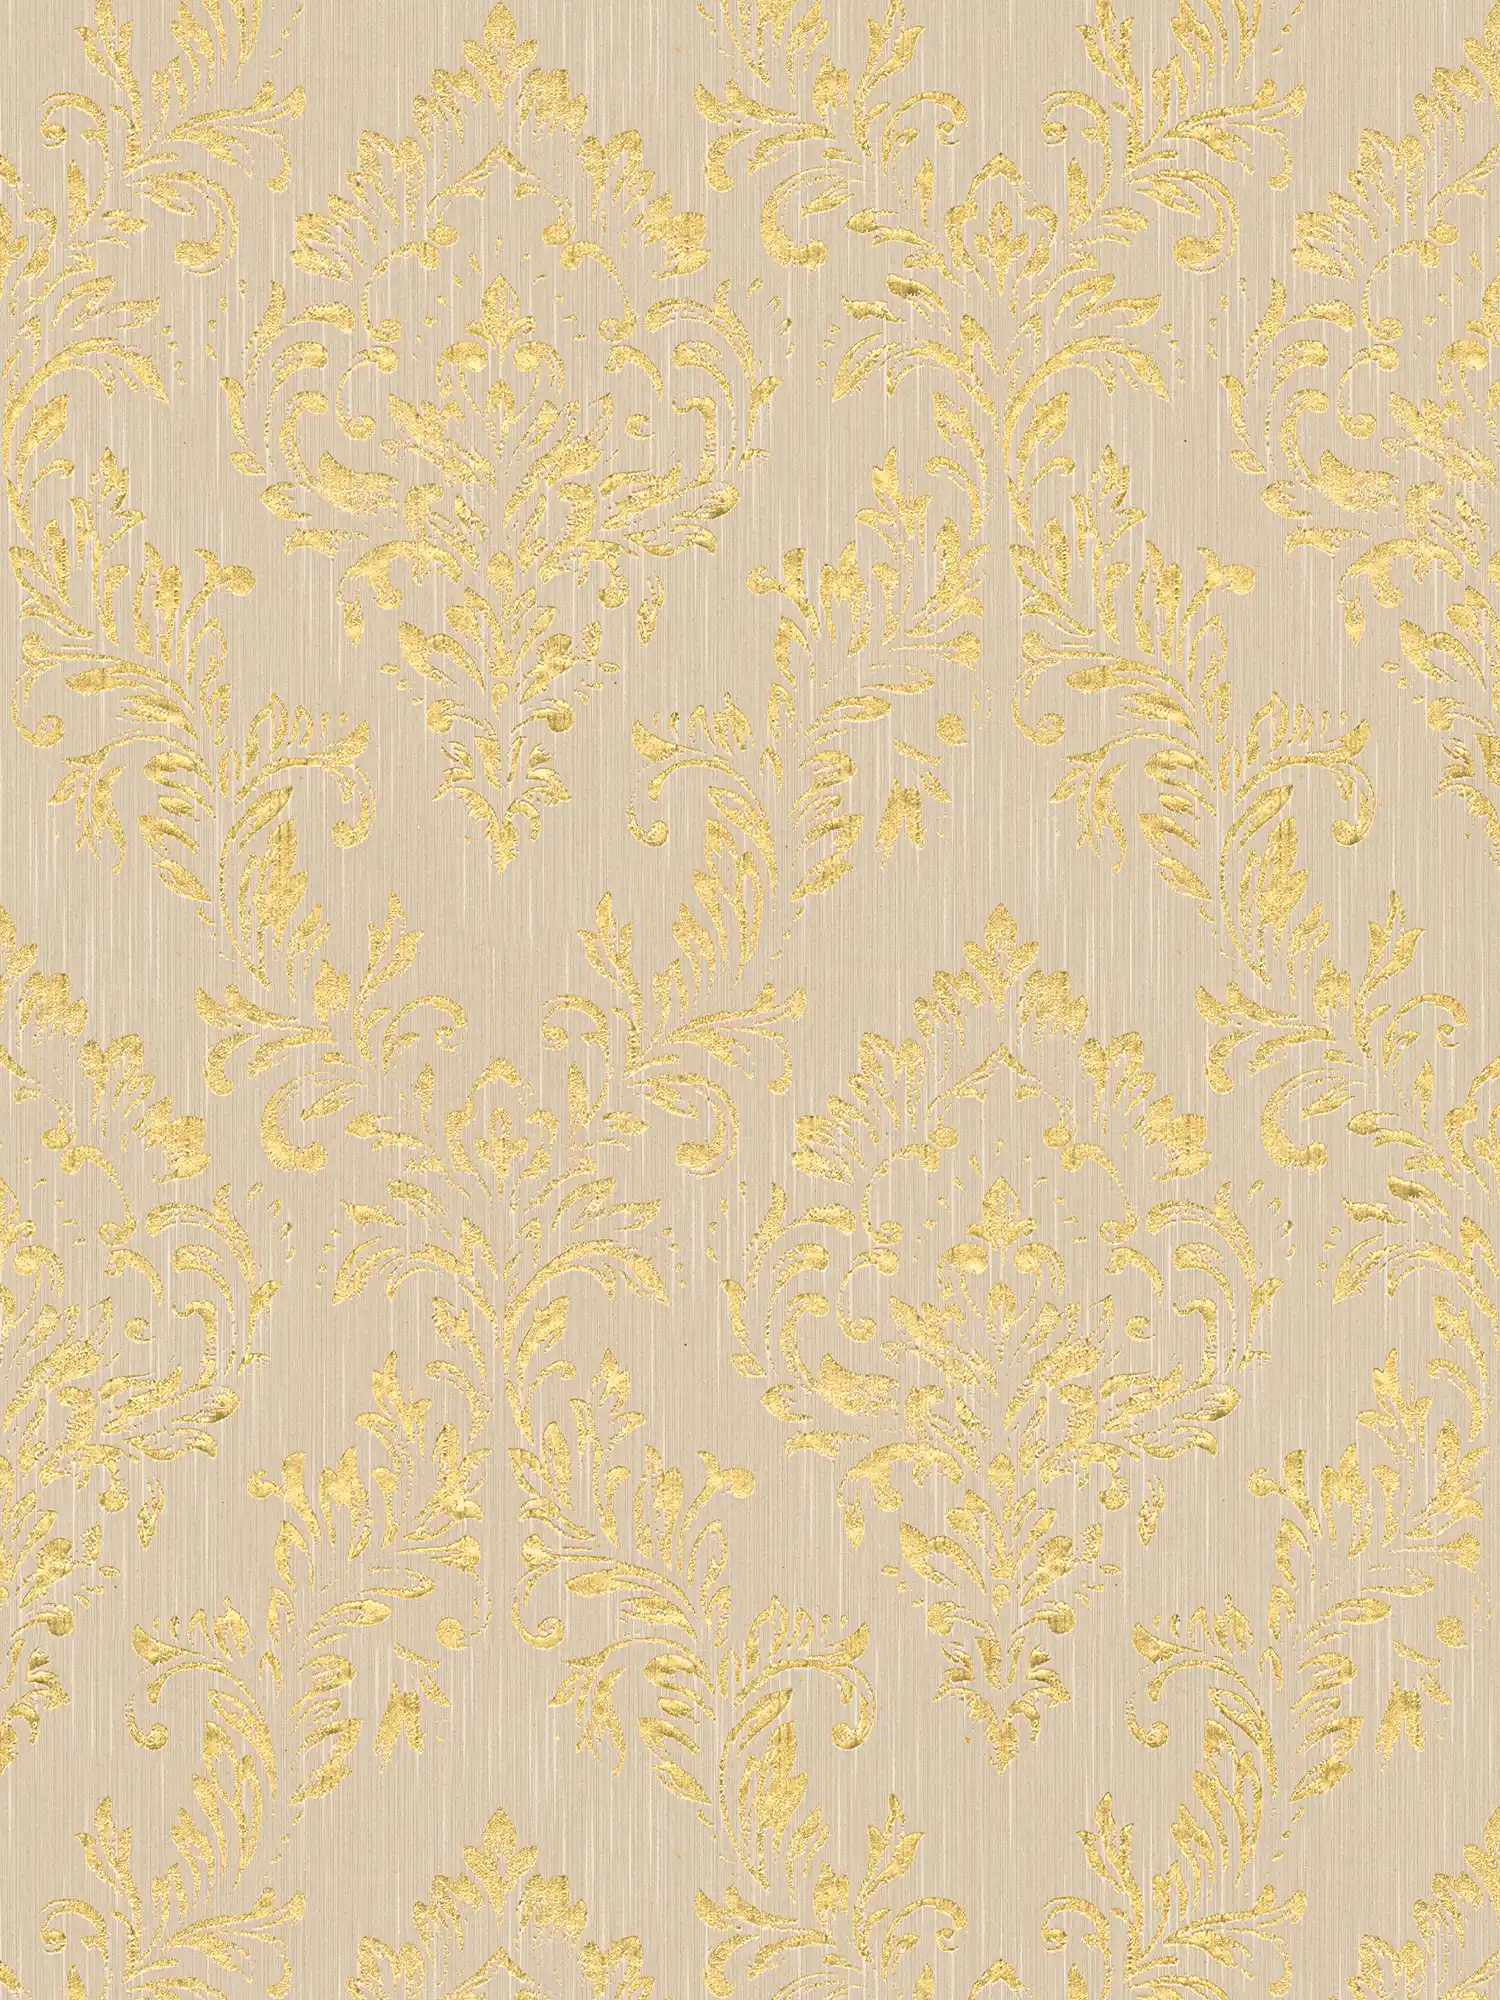 Carta da parati ornamentale floreale con effetto glitter dorato - oro, beige
